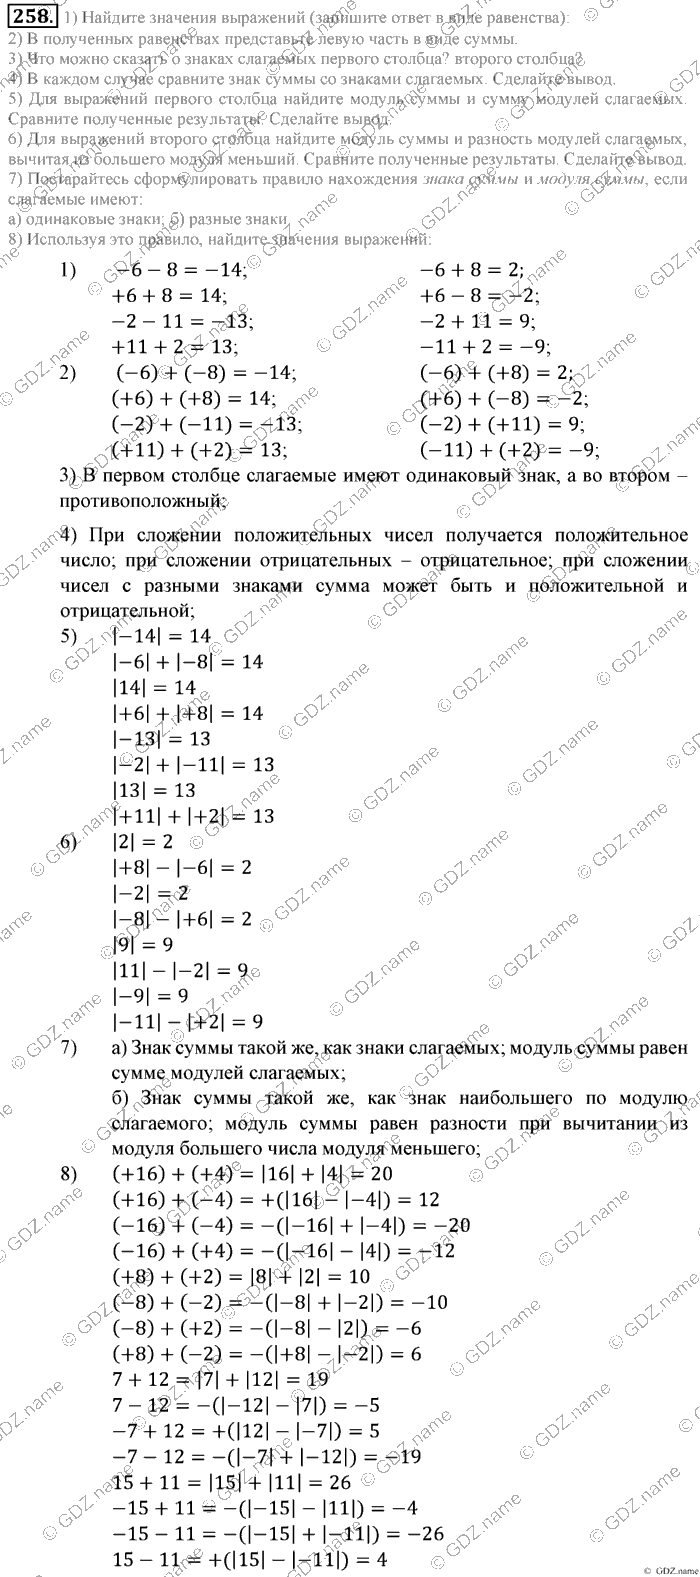 Математика, 6 класс, Зубарева, Мордкович, 2005-2012, §8. Правило вычисления значения алгебраической суммы двух чисел Задание: 258